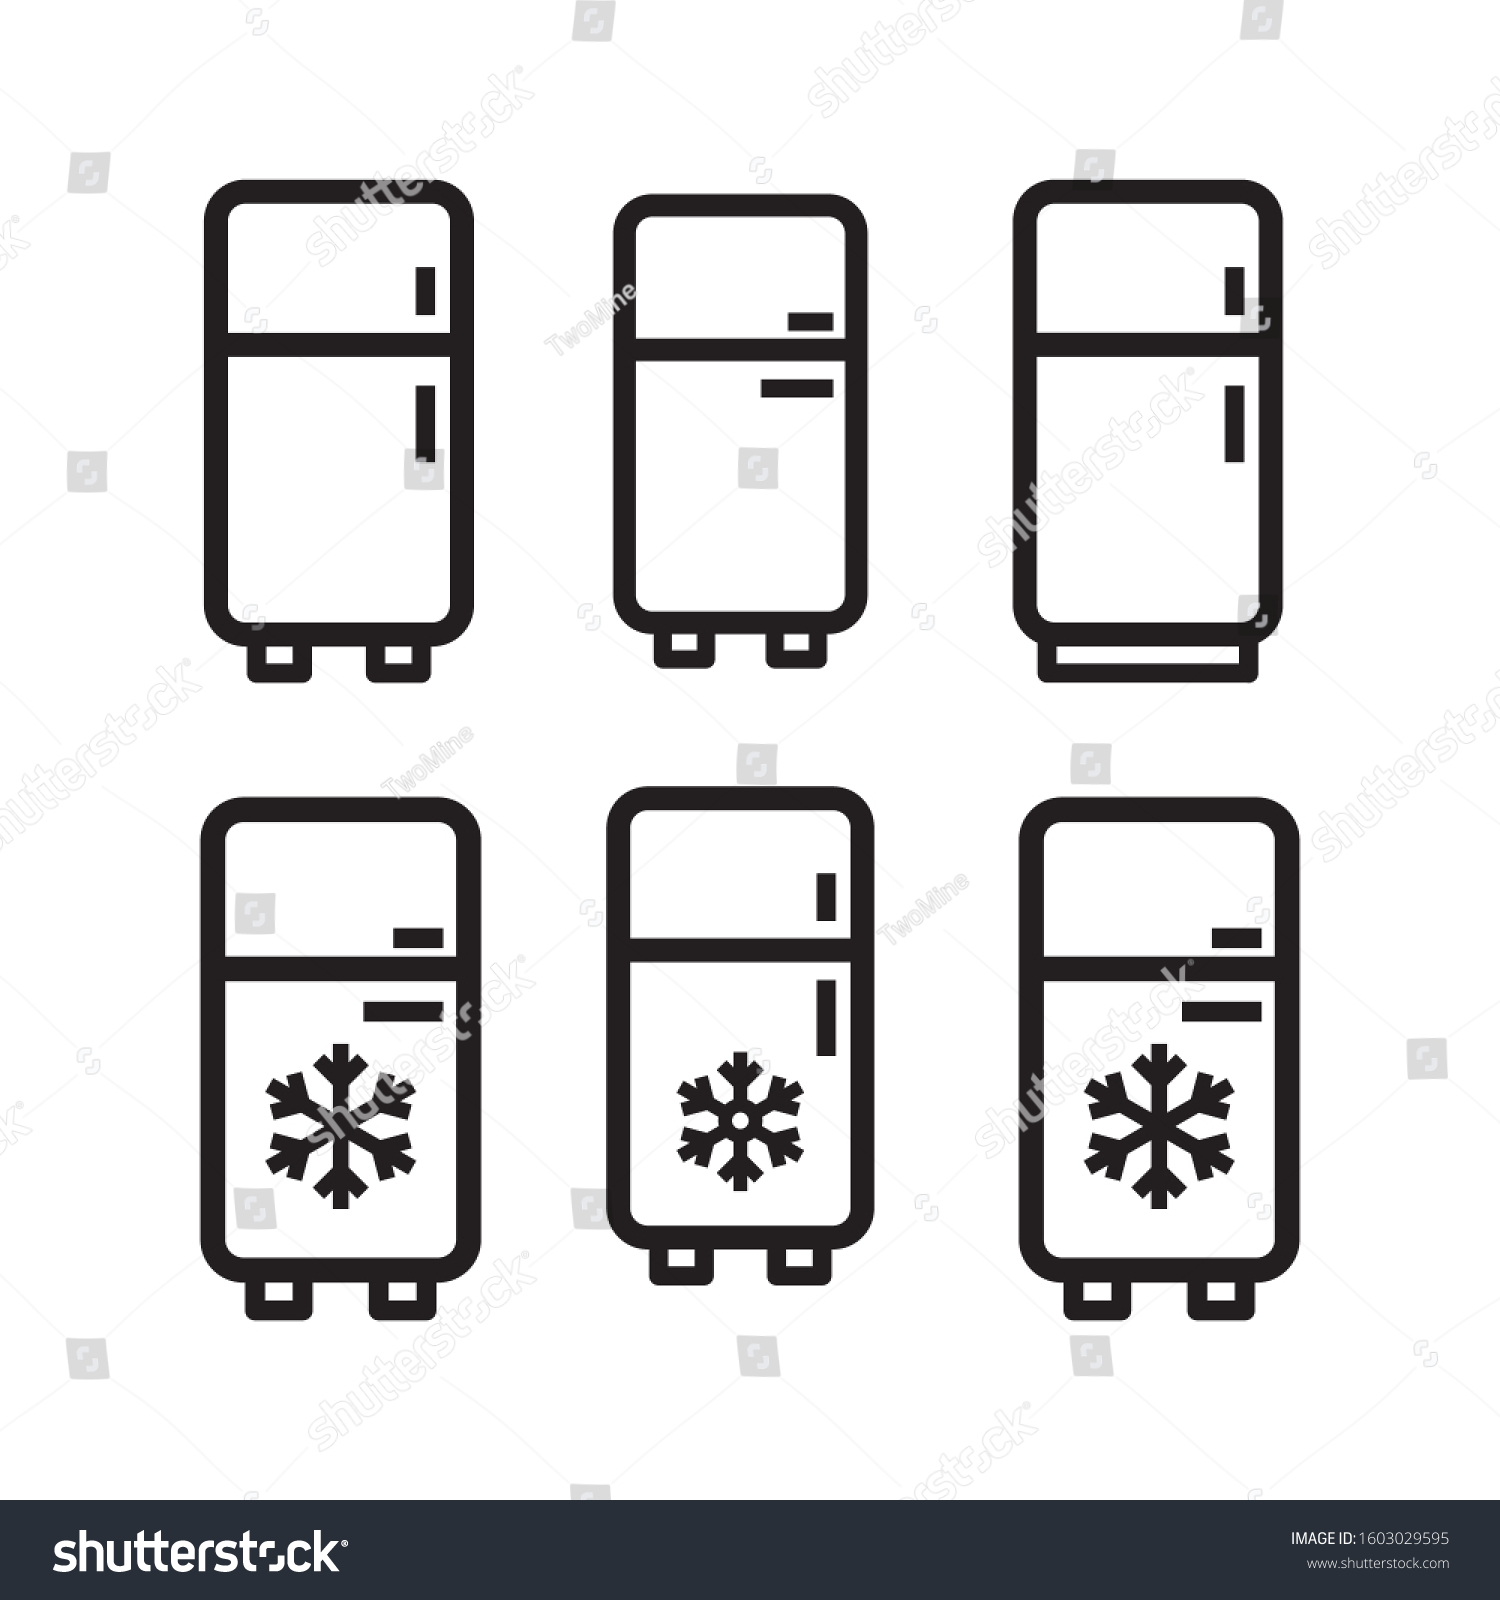 SVG of Refrigerators icon vector in simple design svg